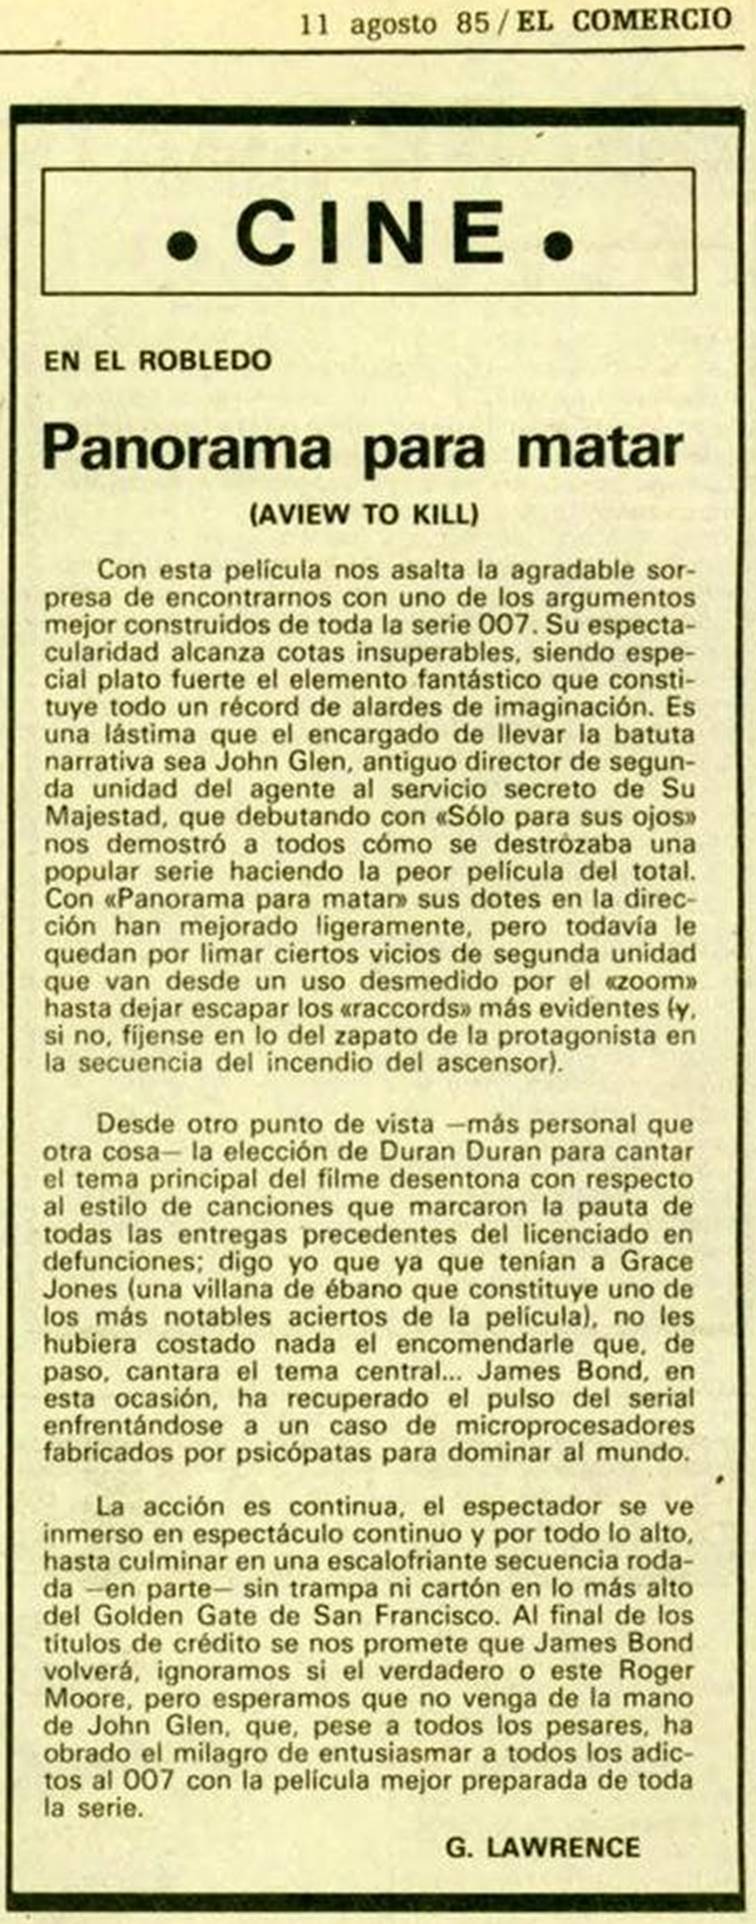 14 1985 08 11 El Comercio Gijon 40 Critica